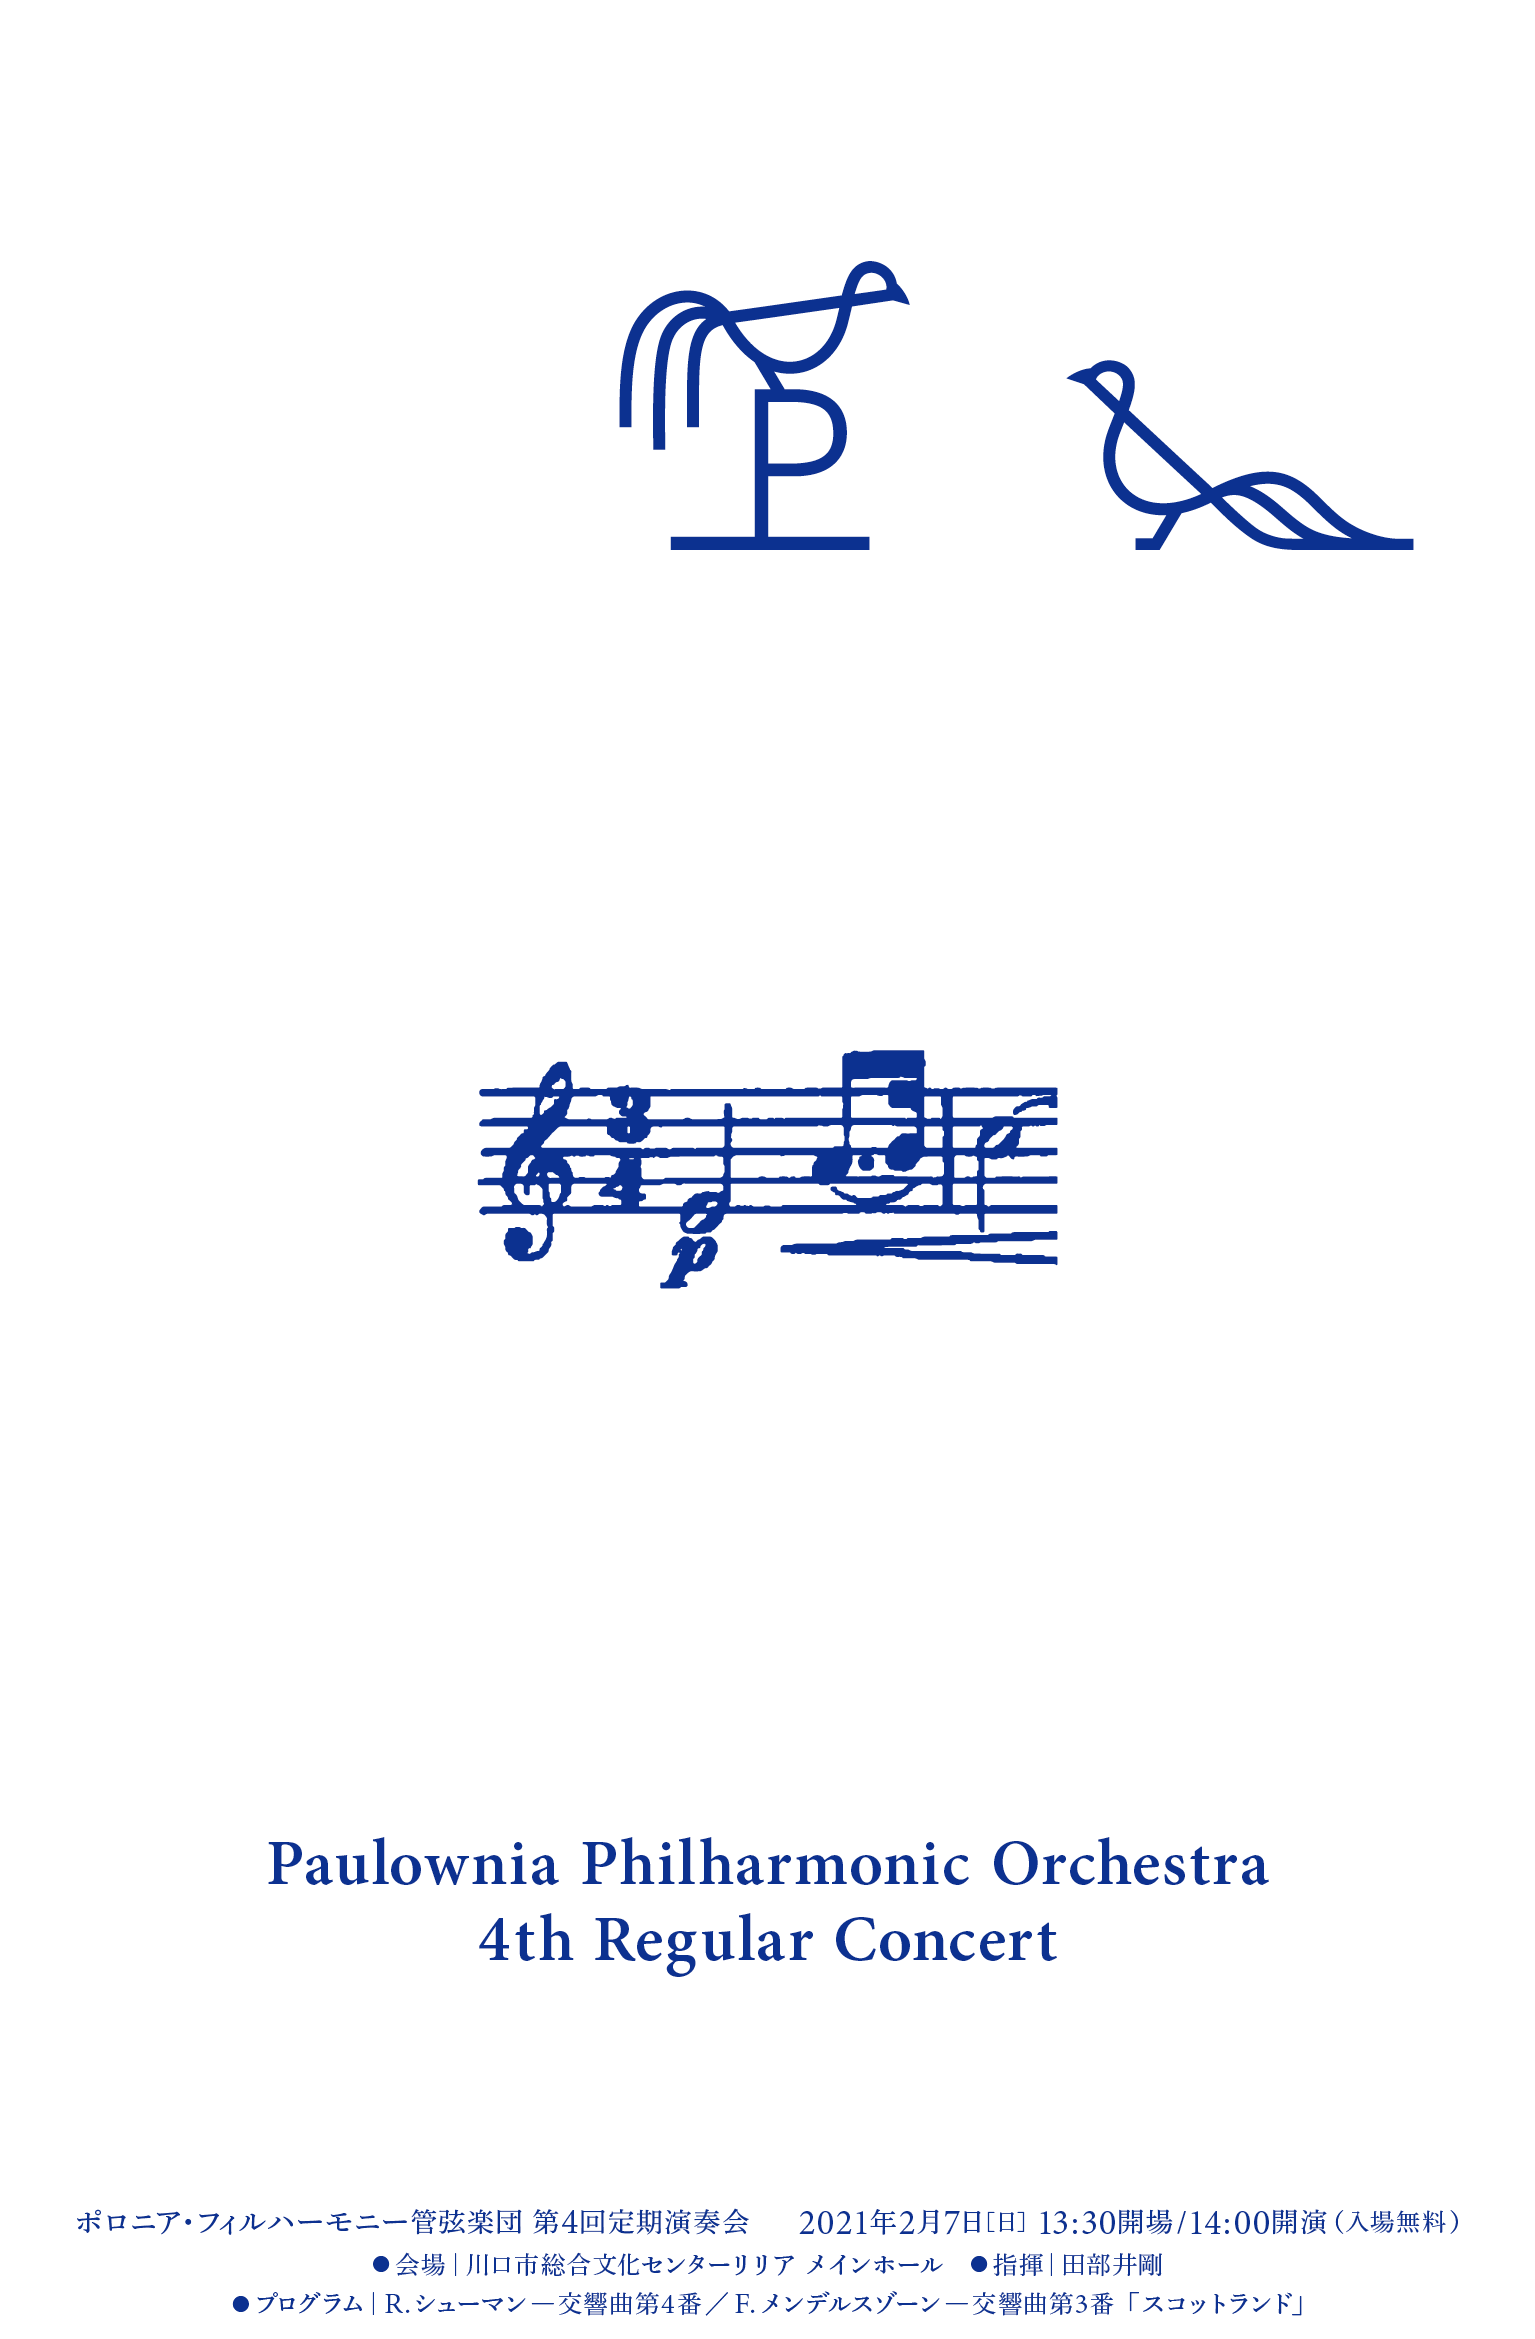 【中止】ポロニア・フィルハーモニー管弦楽団 第4回定期演奏会